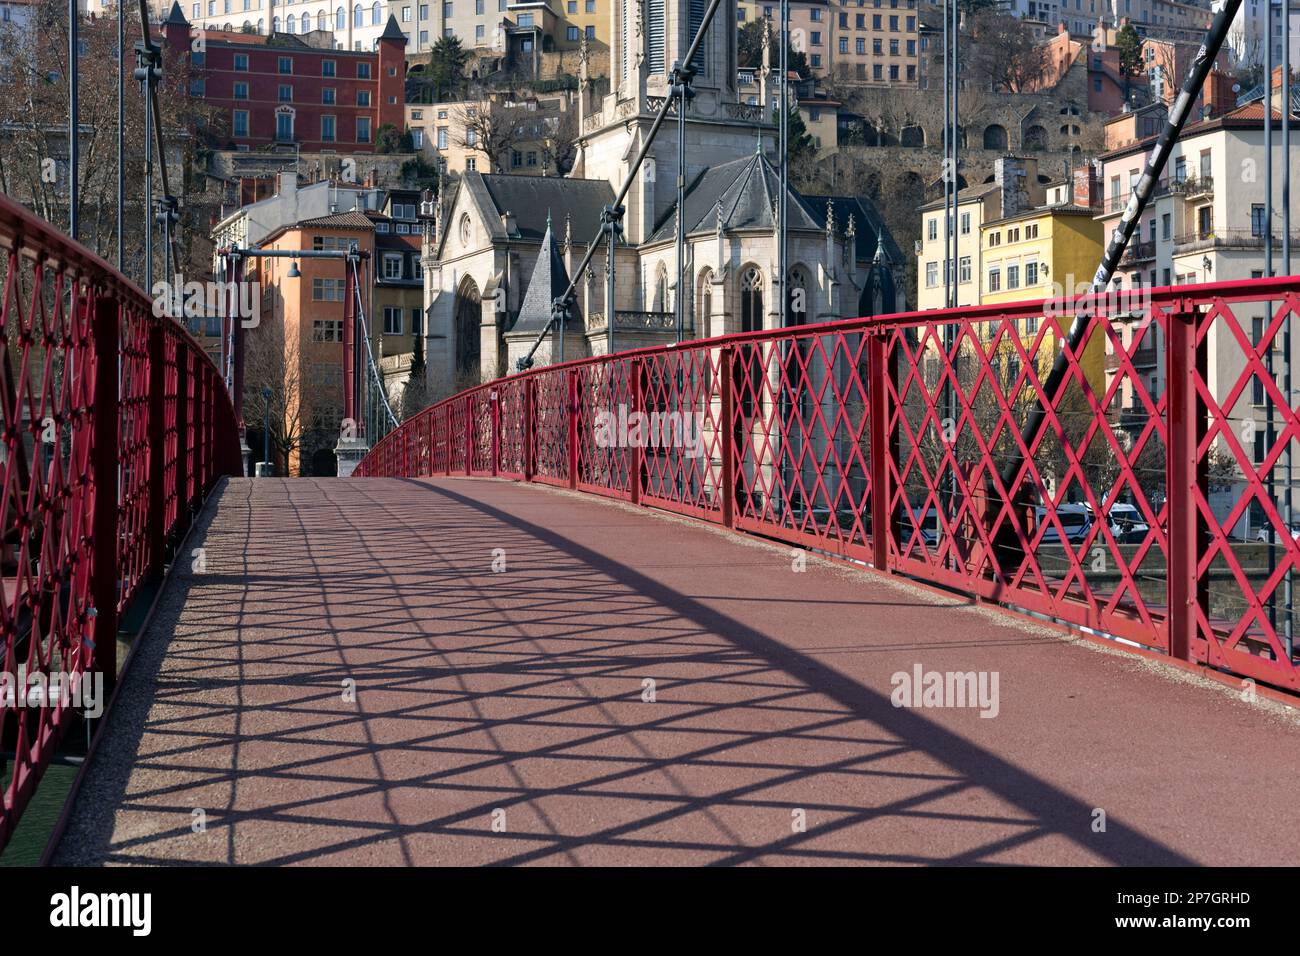 Blick auf die rote Fußgängerbrücke am Saone-Fluss am Morgen, Lyon, Frankreich Stockfoto